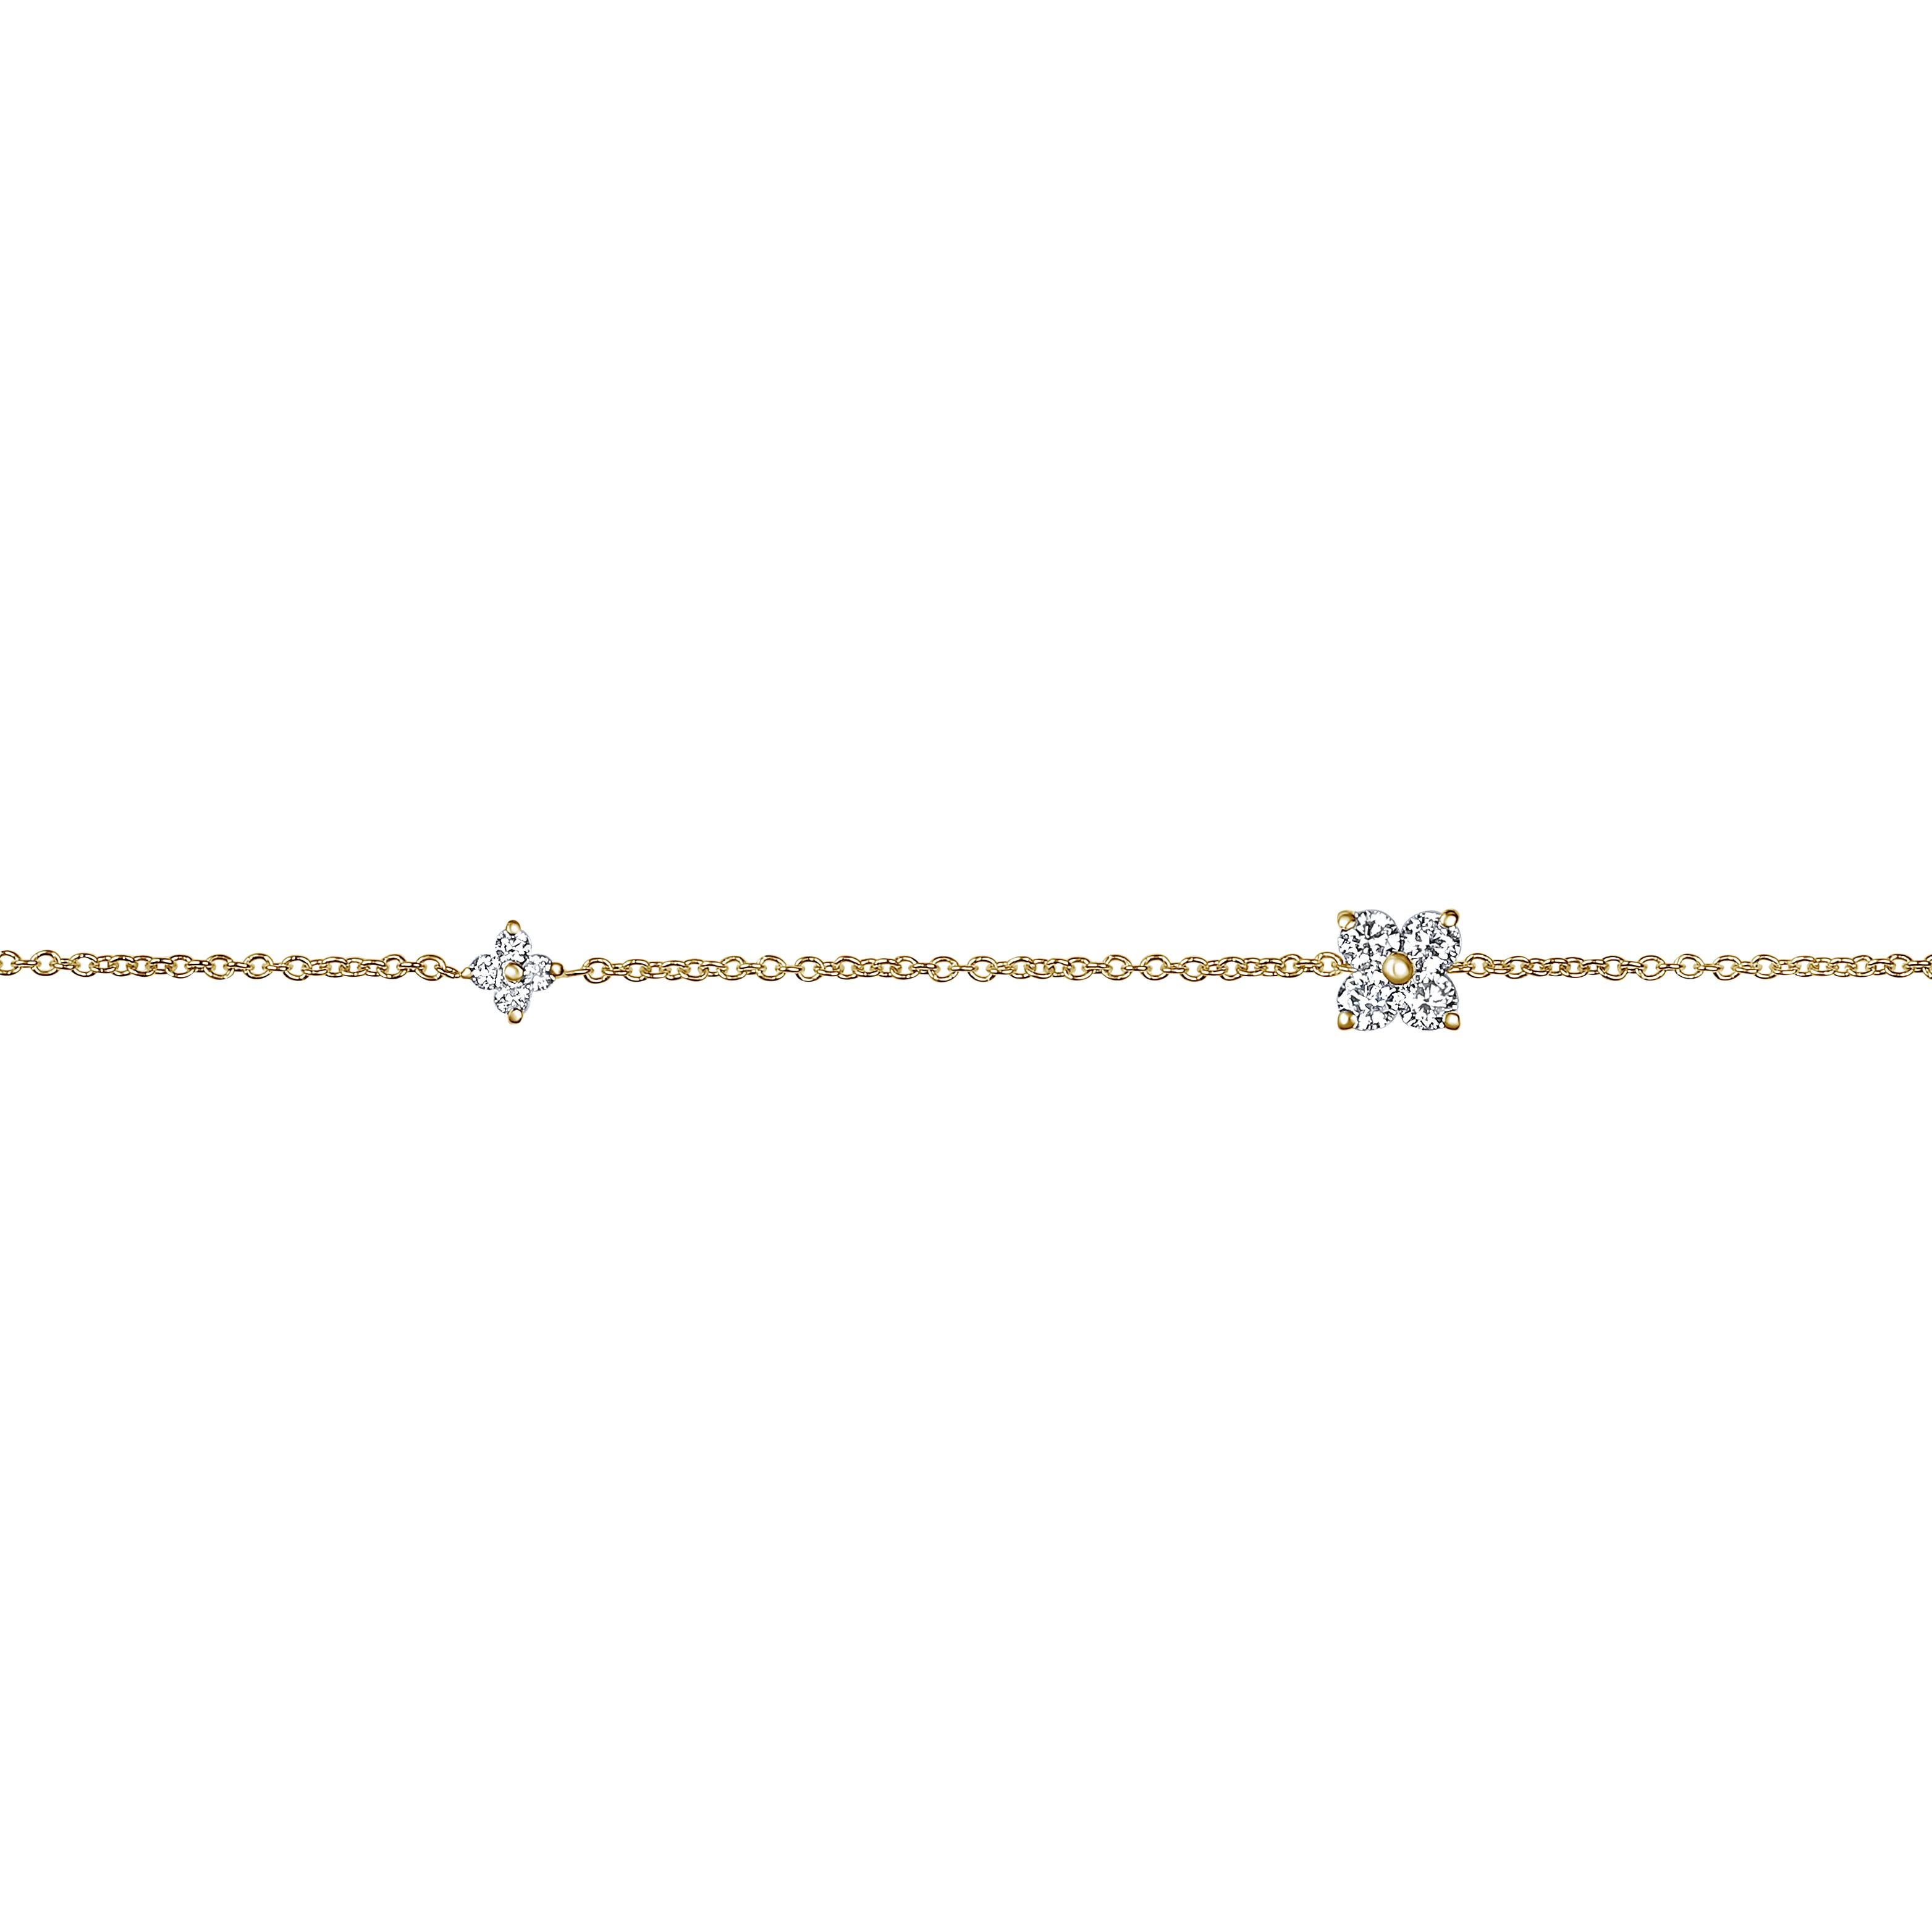 0.bracelet en forme de pétale de fleur avec diamants 24 carats en or jaune 14 carats, Shlomit Rogel

Ce bracelet à chaîne délicat est le résultat d'une belle étincelle et d'un design merveilleusement élégant. Réalisé en or jaune massif 14 carats, le